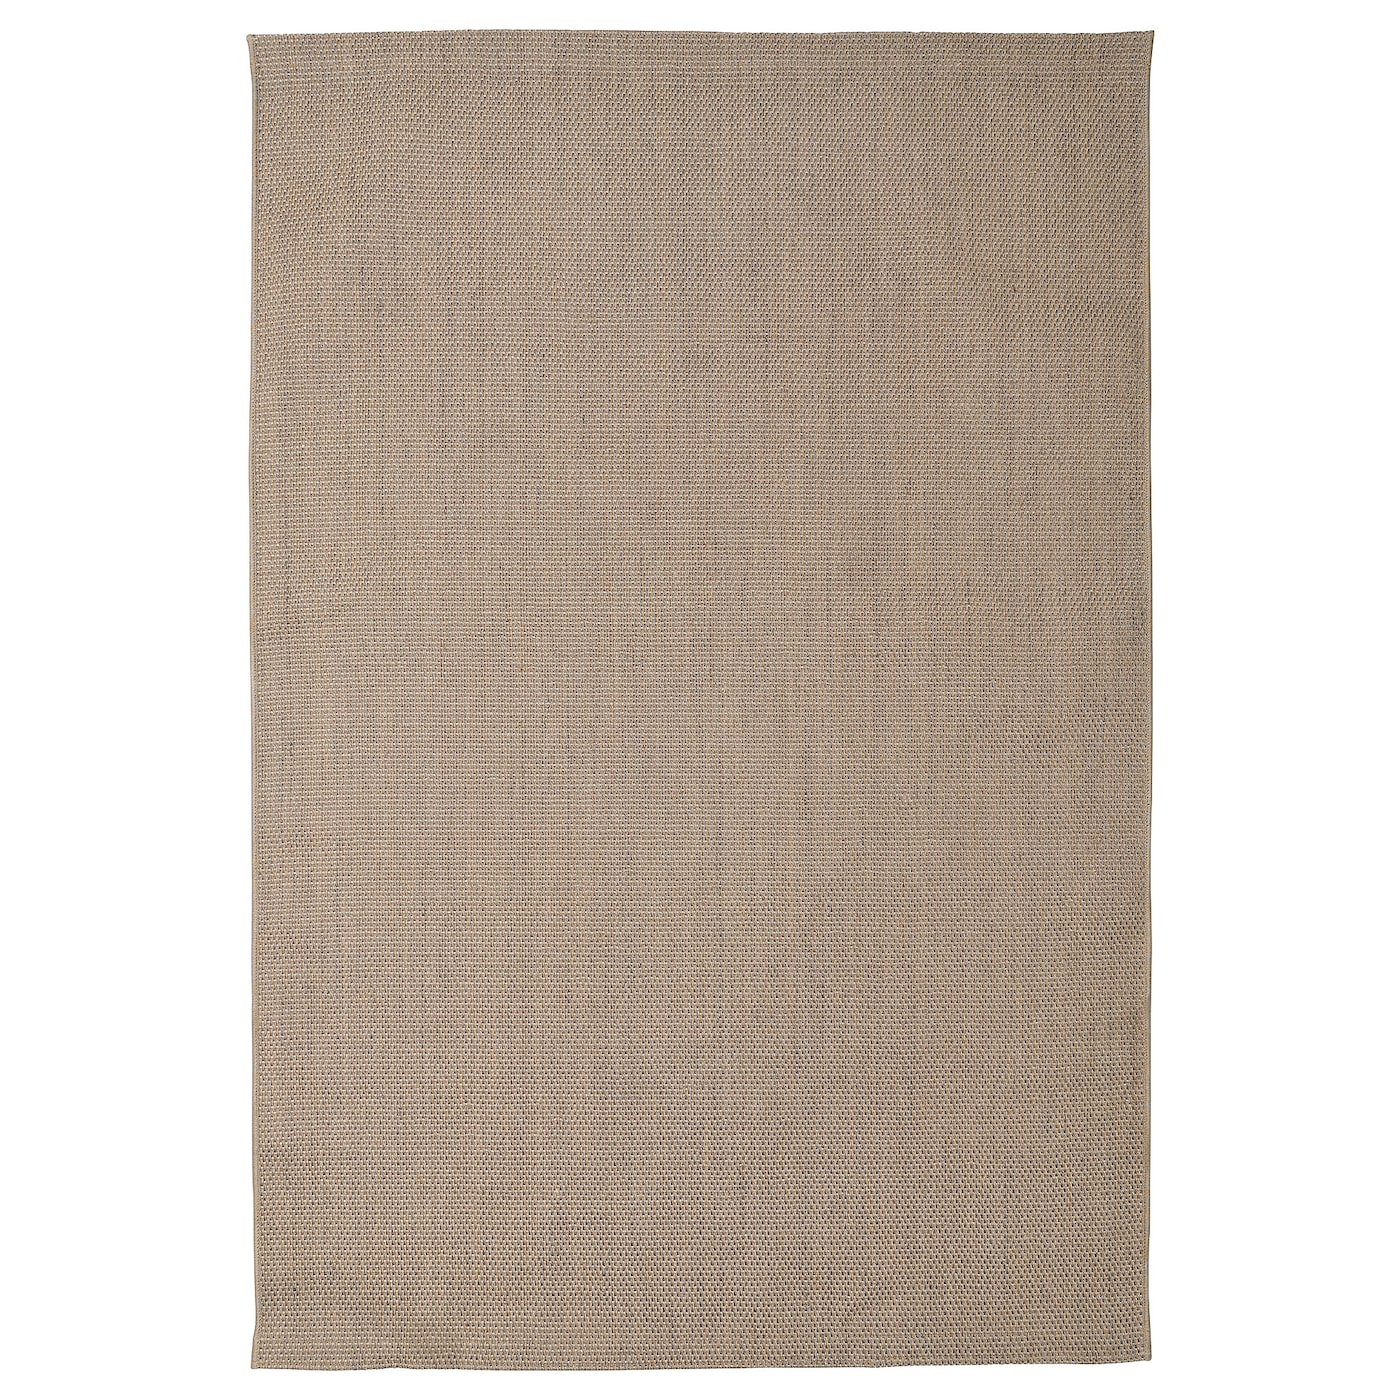 Джутовый ковер - IKEA VODSKOV/ВОДСКОВ ИКЕА, 240х170 см, светло-коричневый